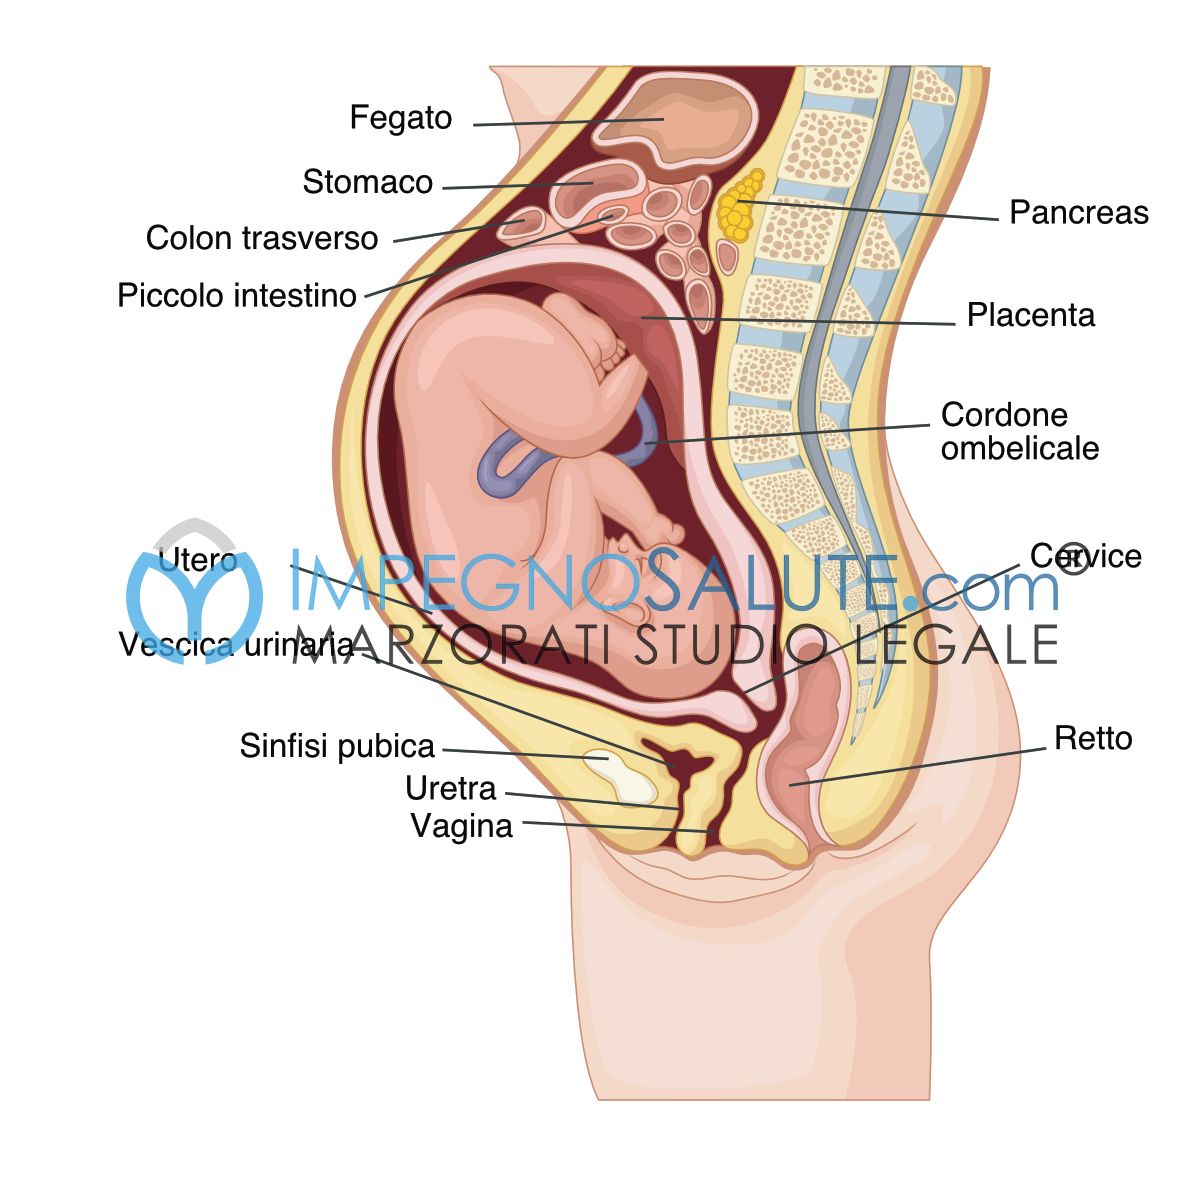 Il parto vaginale dopo un taglio cesareo